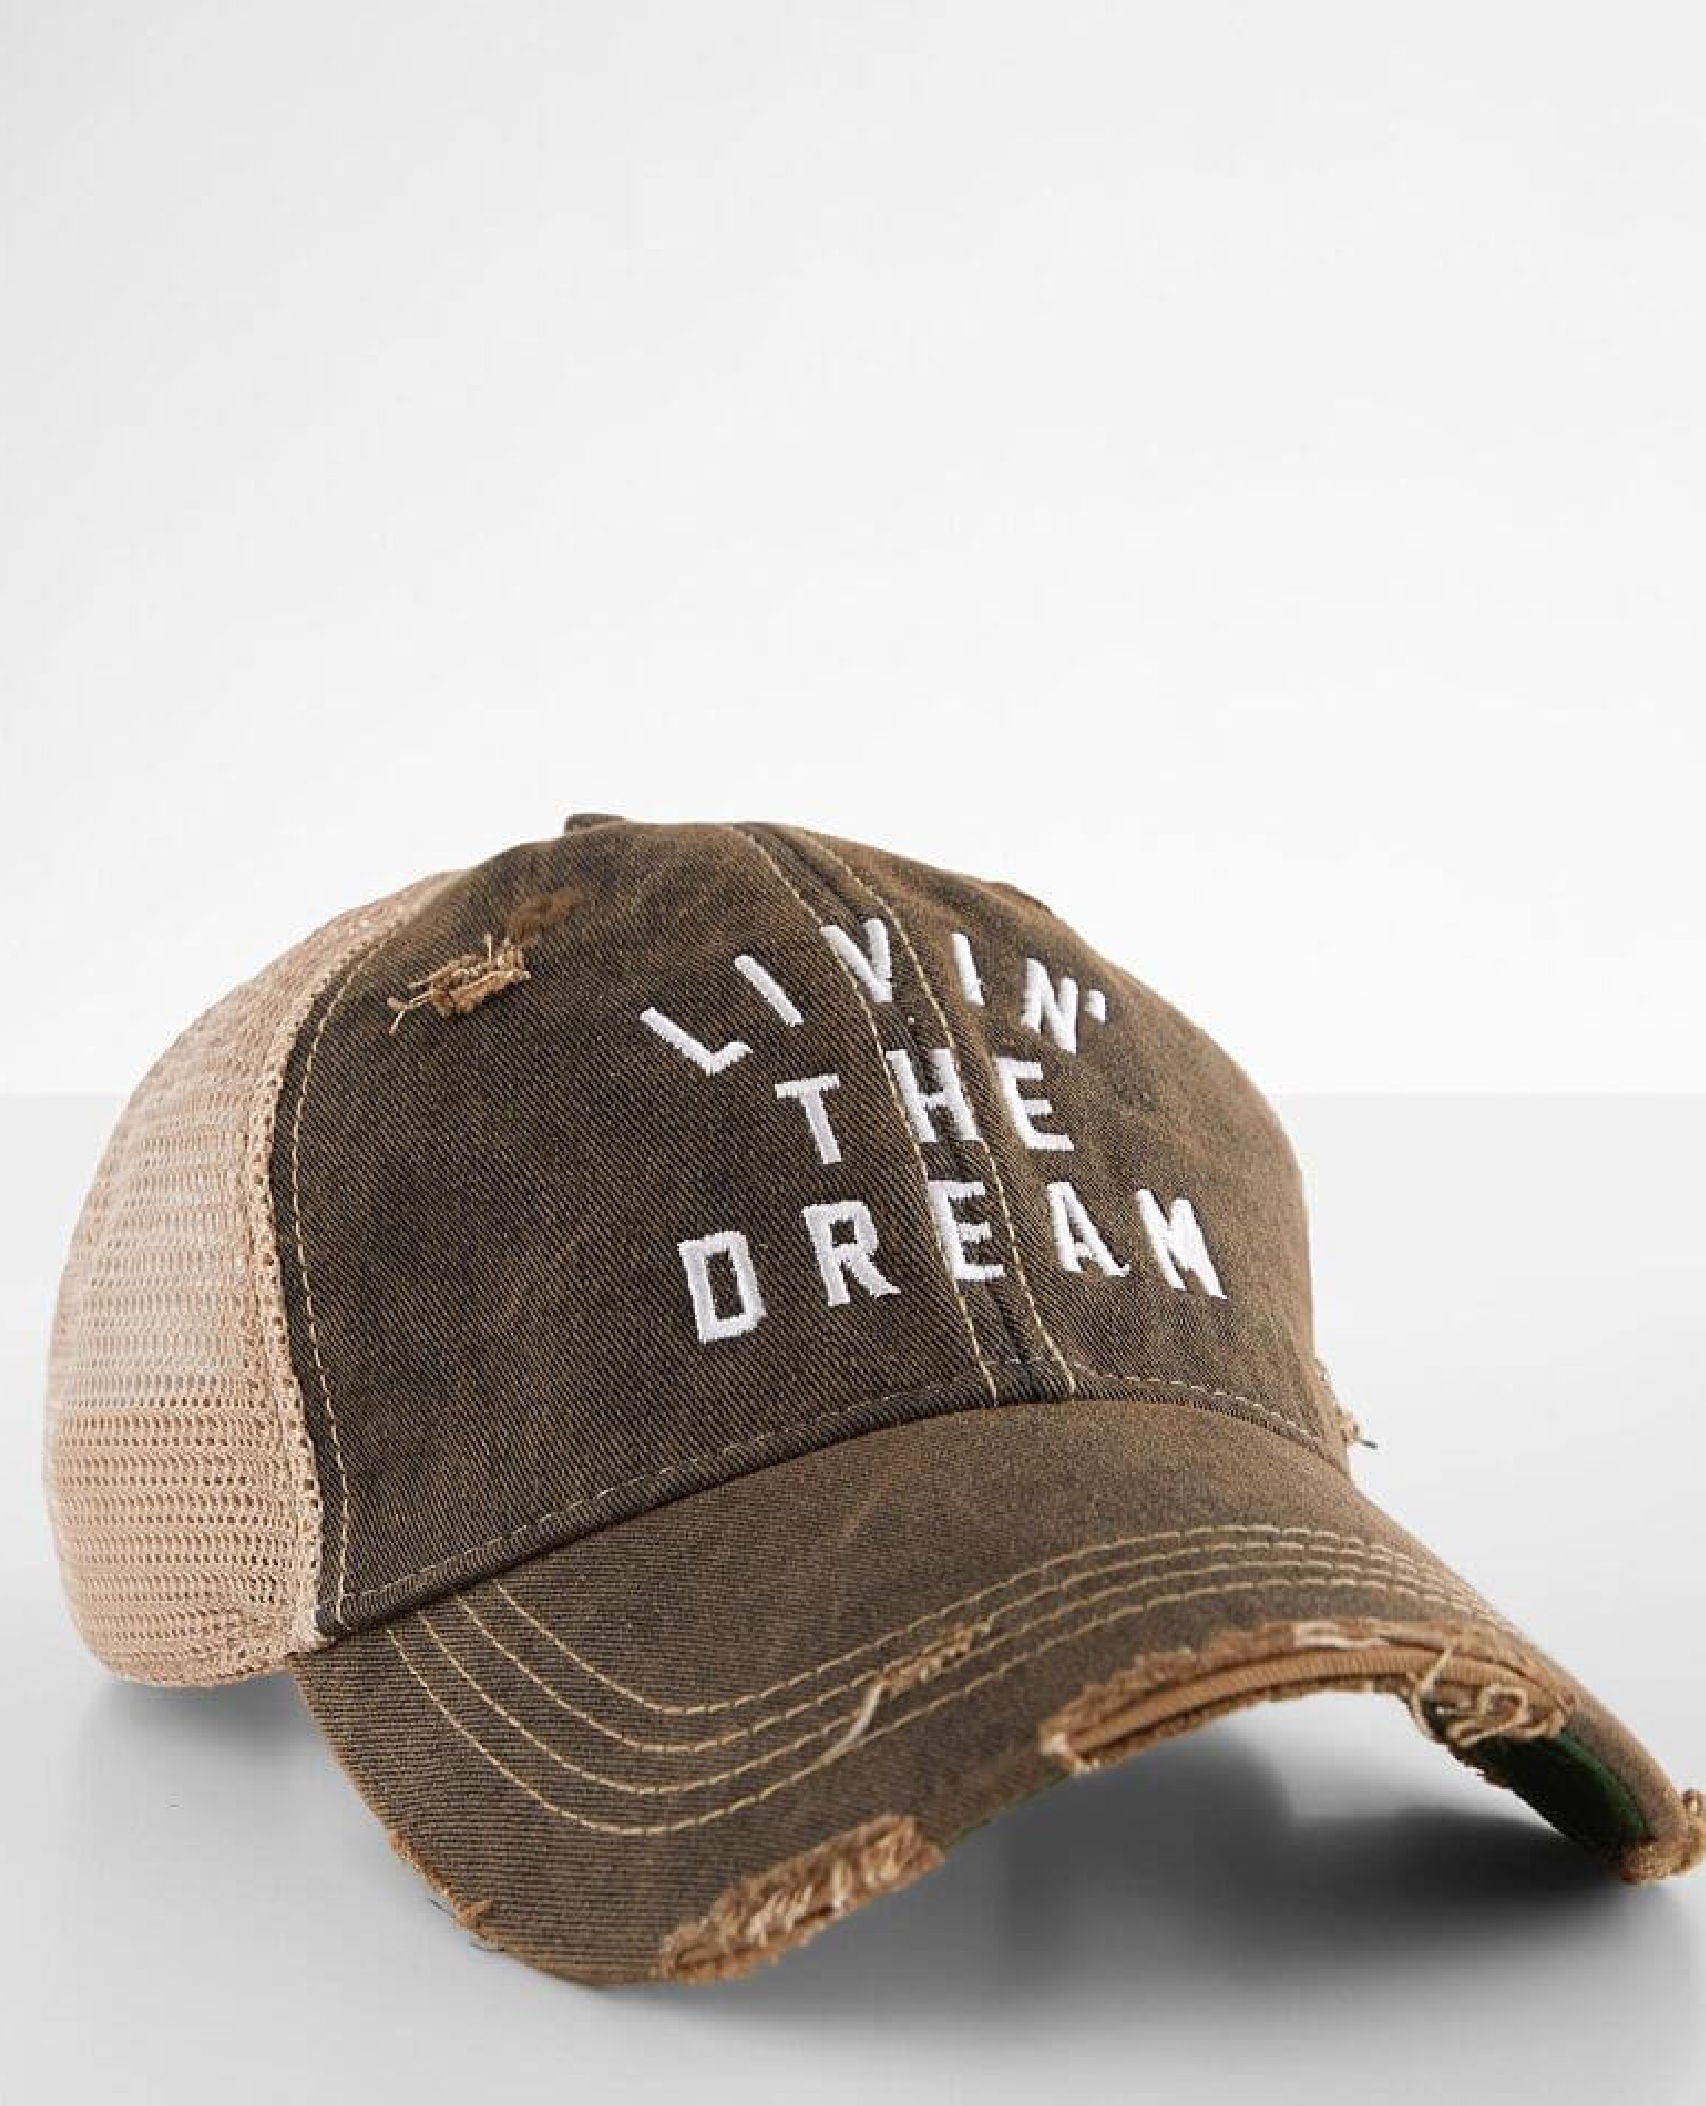 Livin' The Dream Trucker Hat